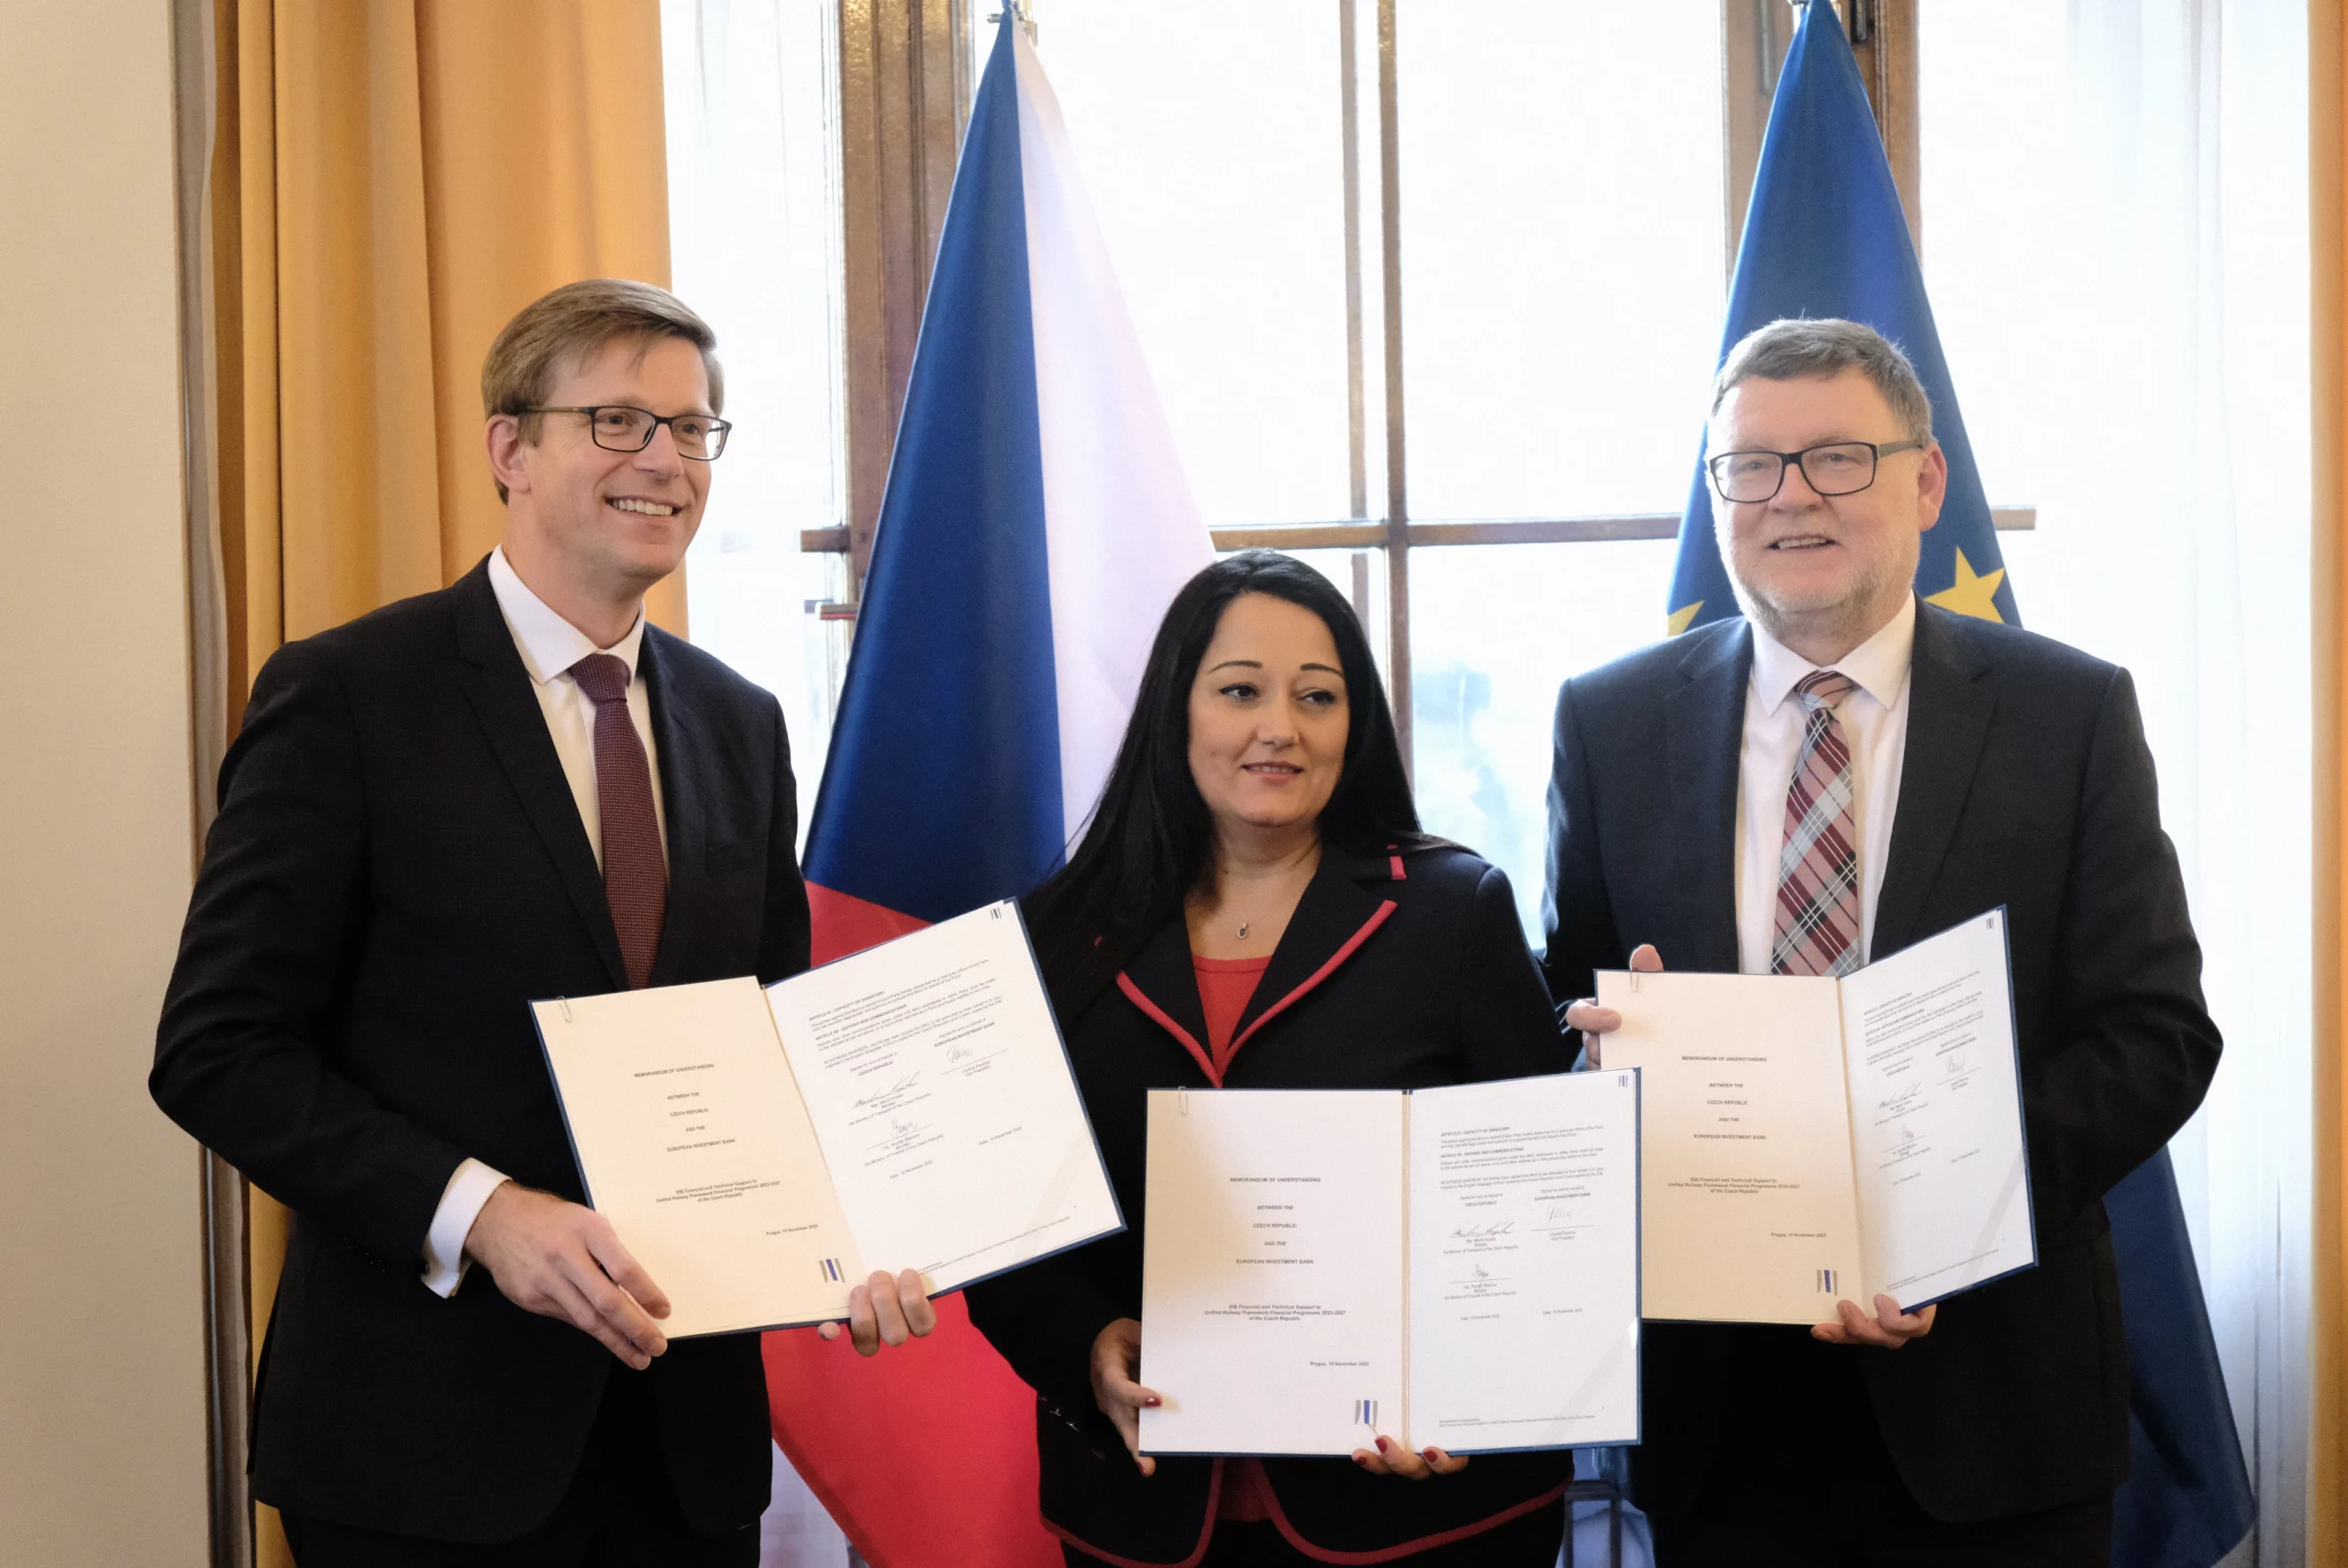 ČR a EIB podepsaly Memorandum o financování výstavby železniční infrastruktury